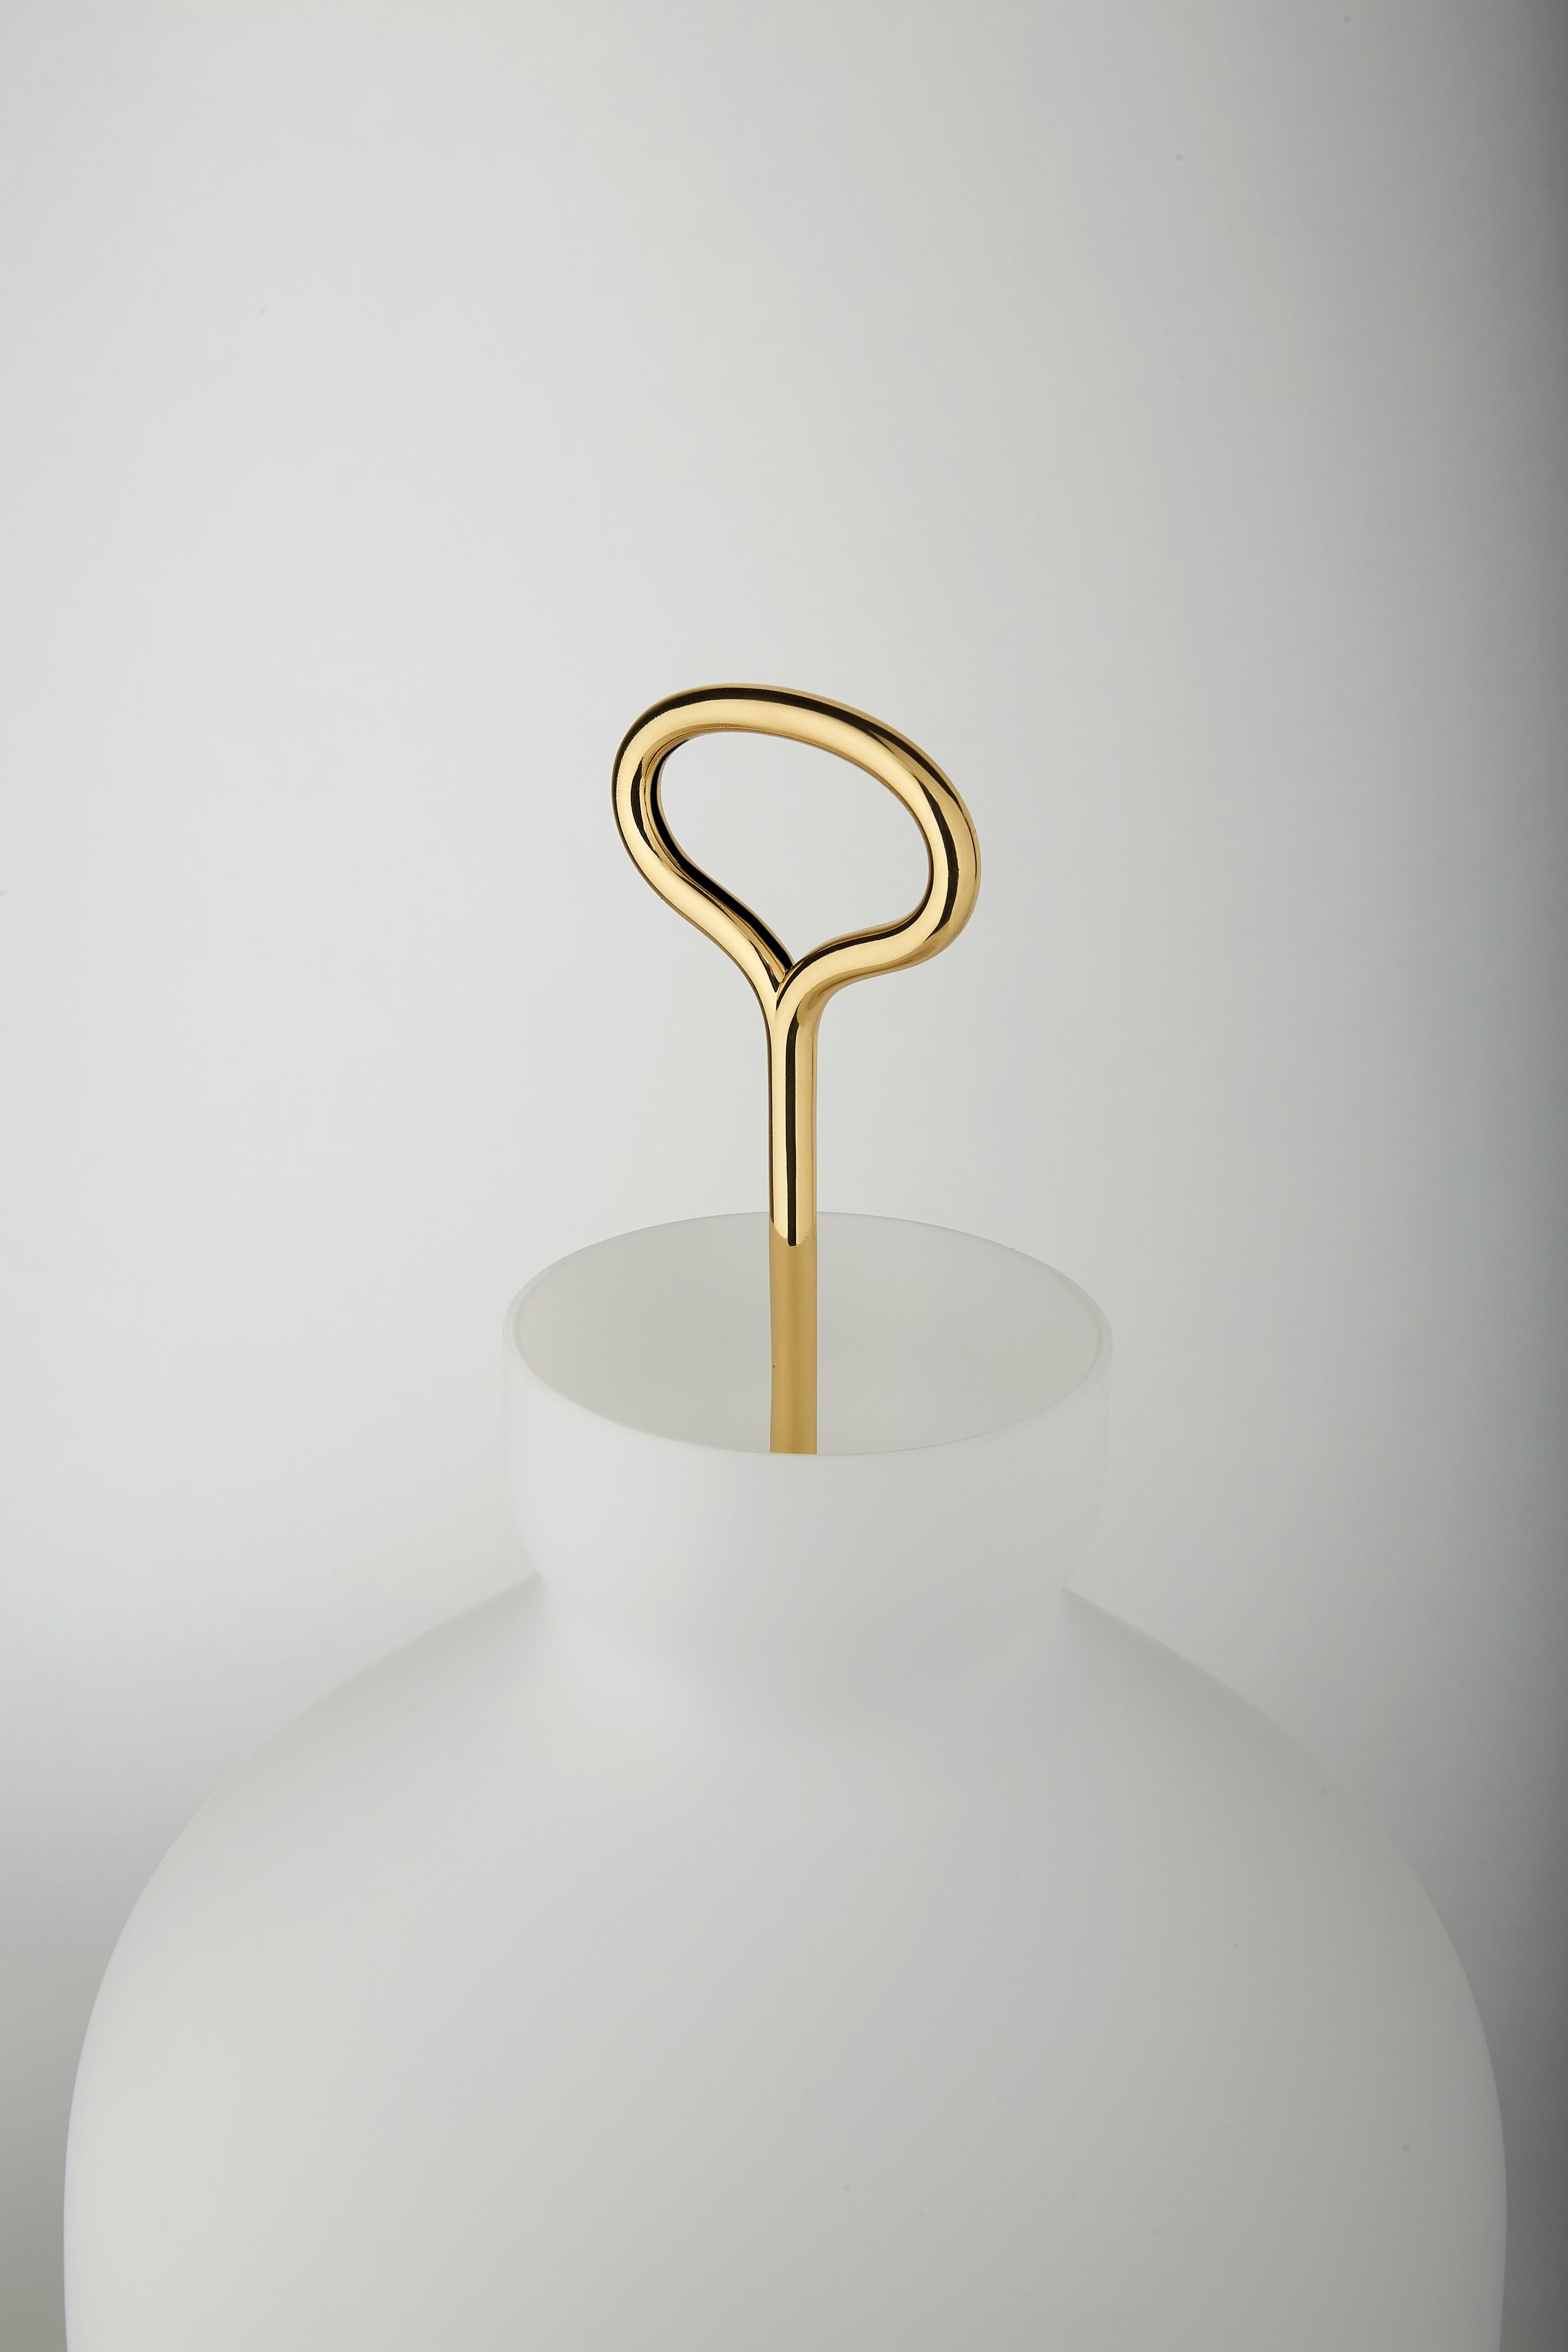 Italian Large Ignazio Gardella 'Arenzano' Table Lamp in Brass and Glass for Tato Italia For Sale